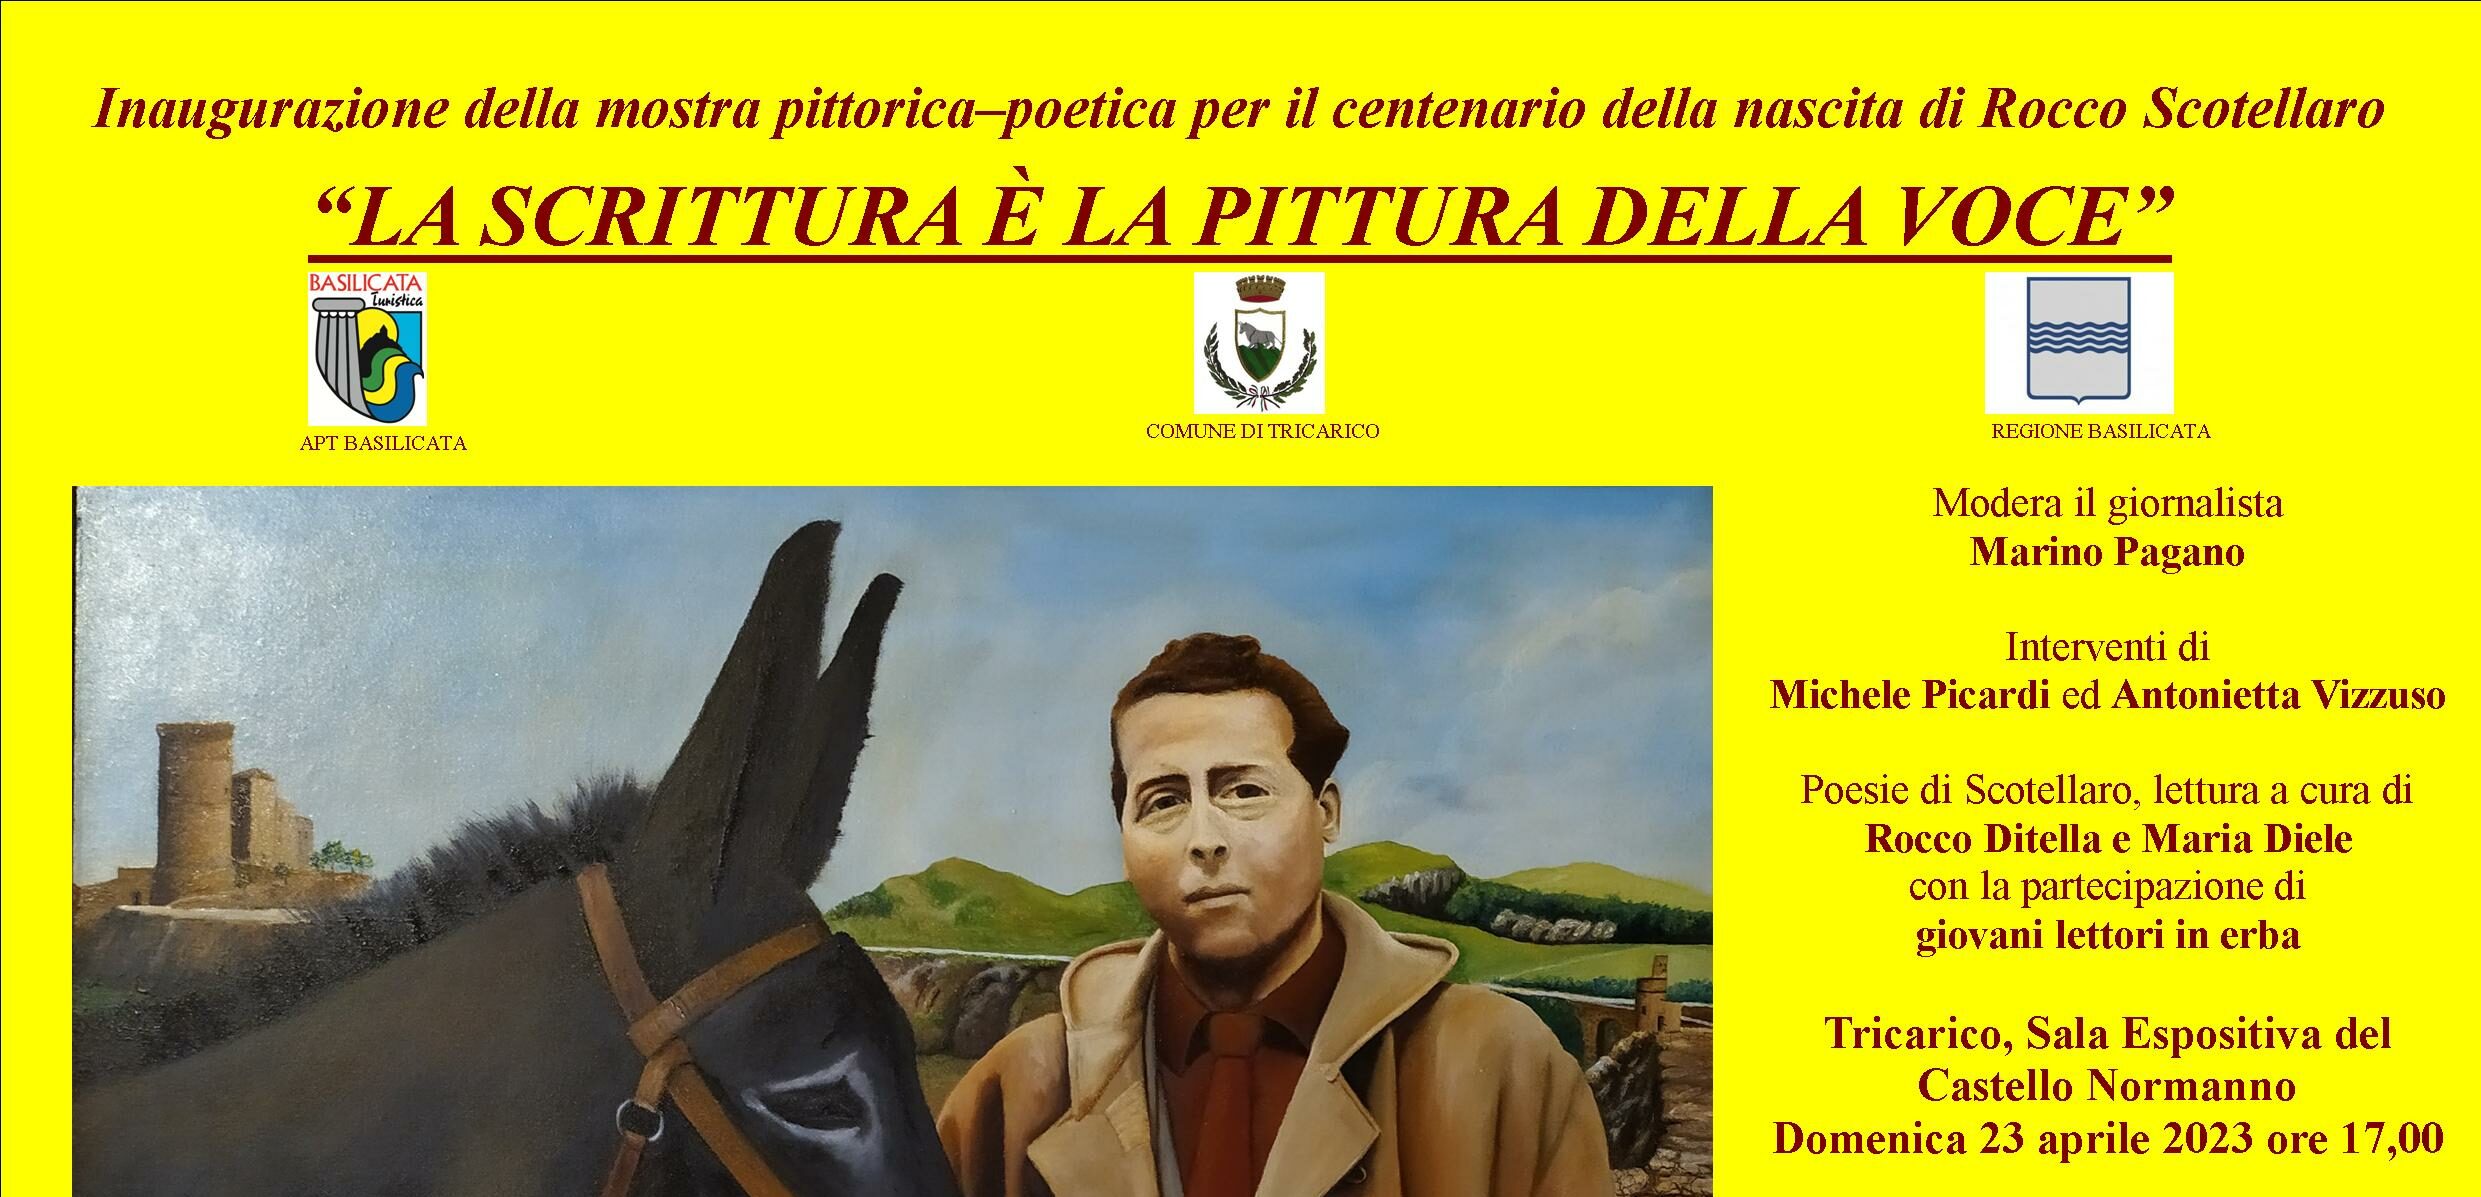 Tricarico, mostra pittorica-poetica per il centenario della nascita di Rocco Scotellaro